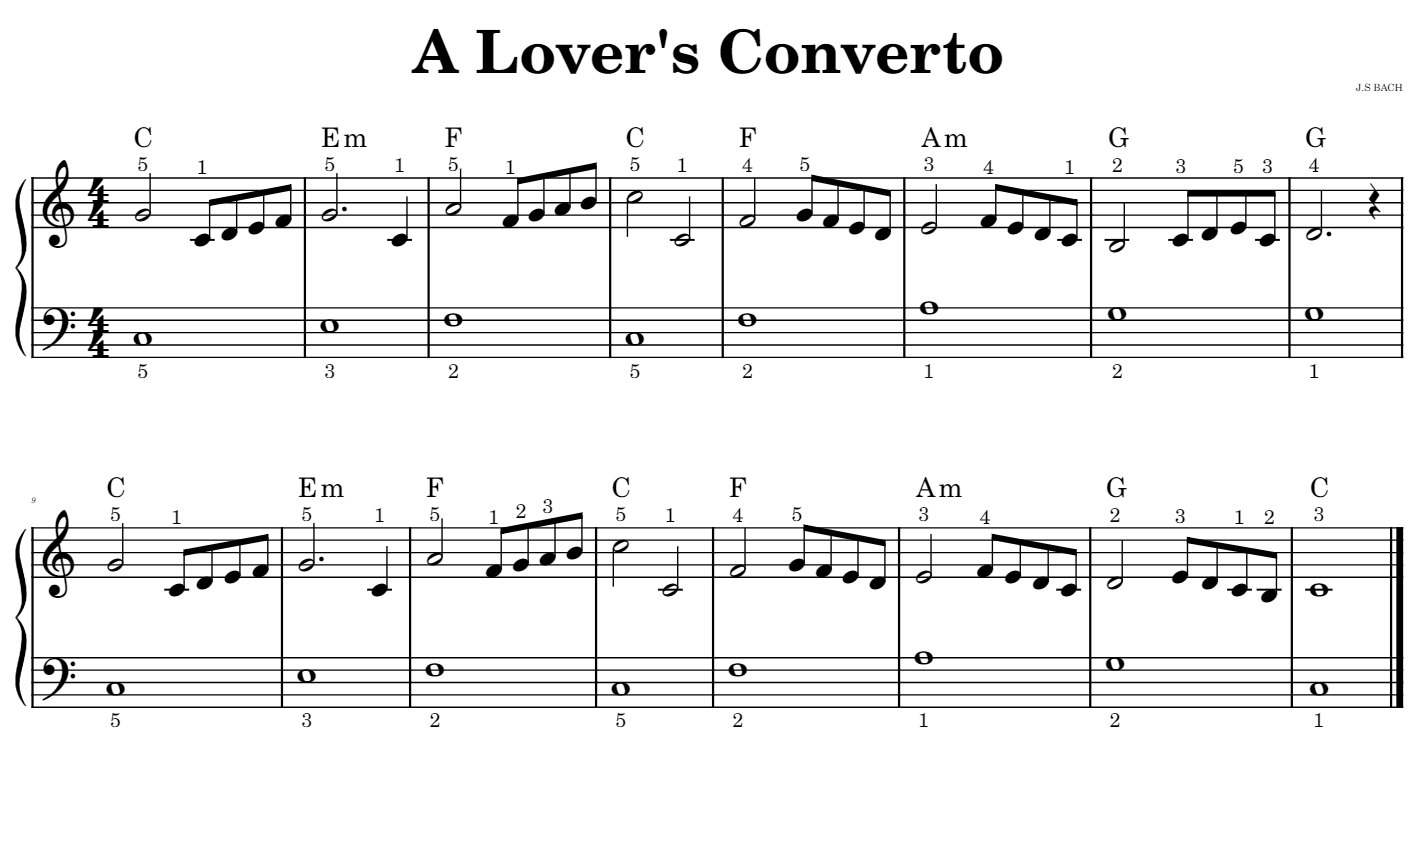 A_Lover's_Converto - Solo Piano